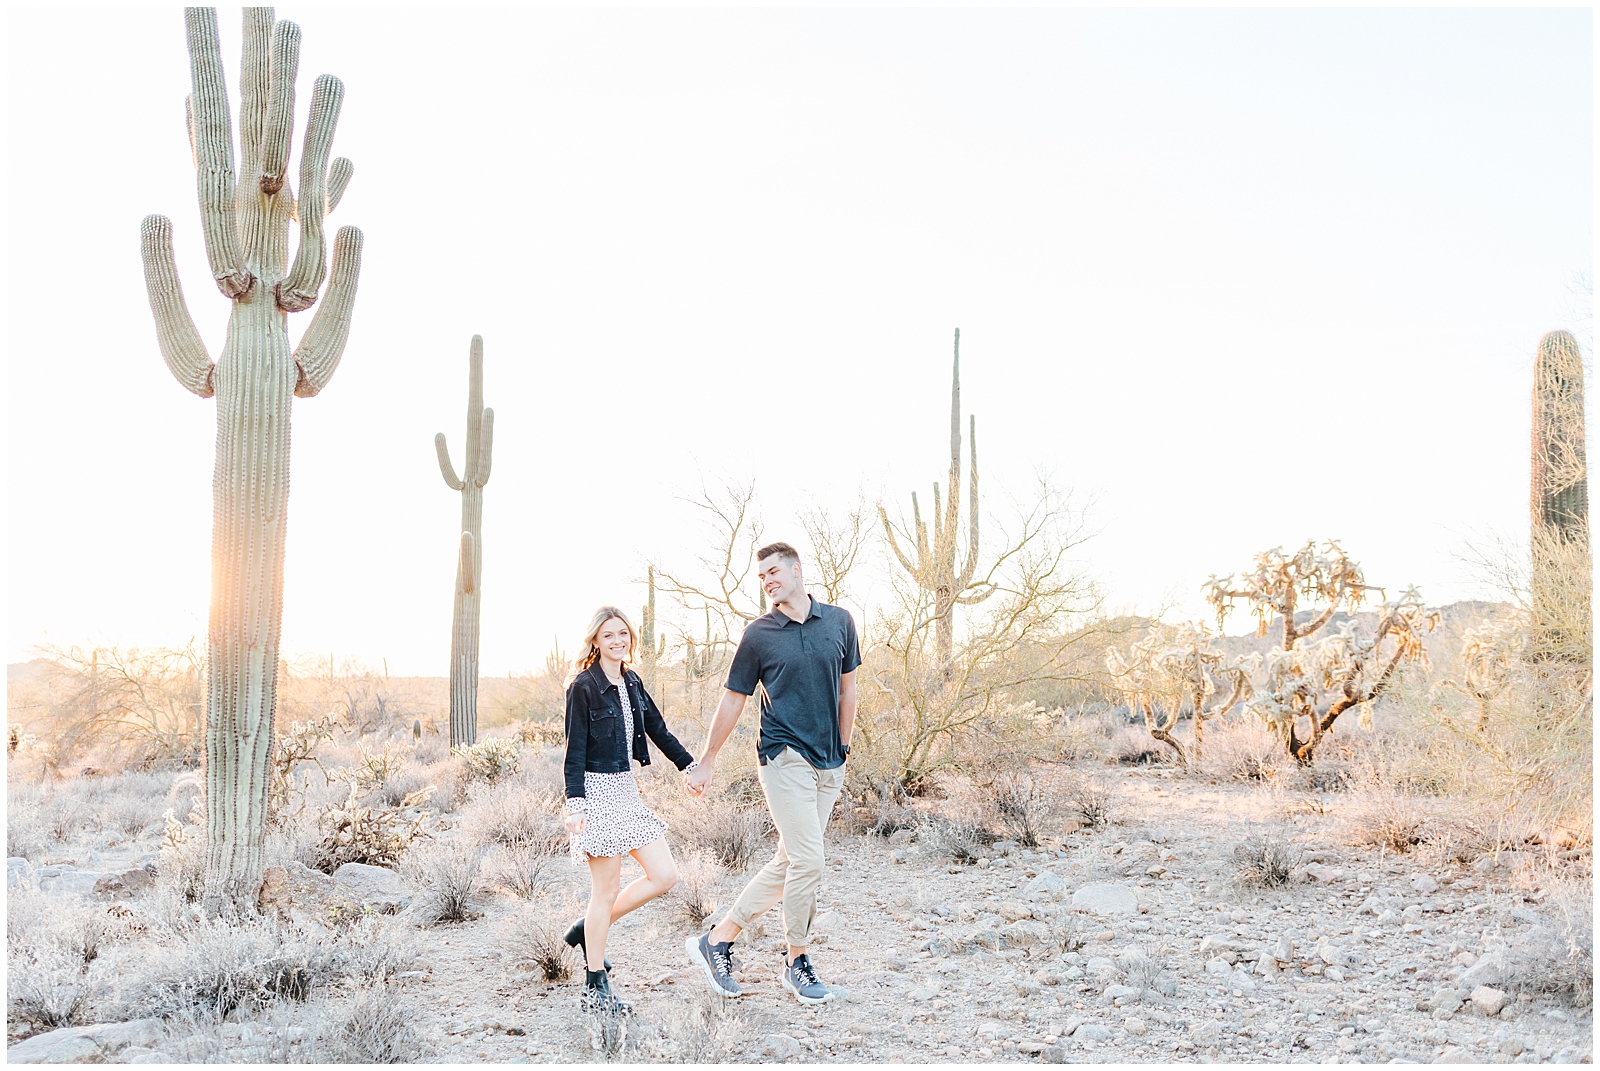 Dreamy Arizona Desert Session Couple Walking in Desert